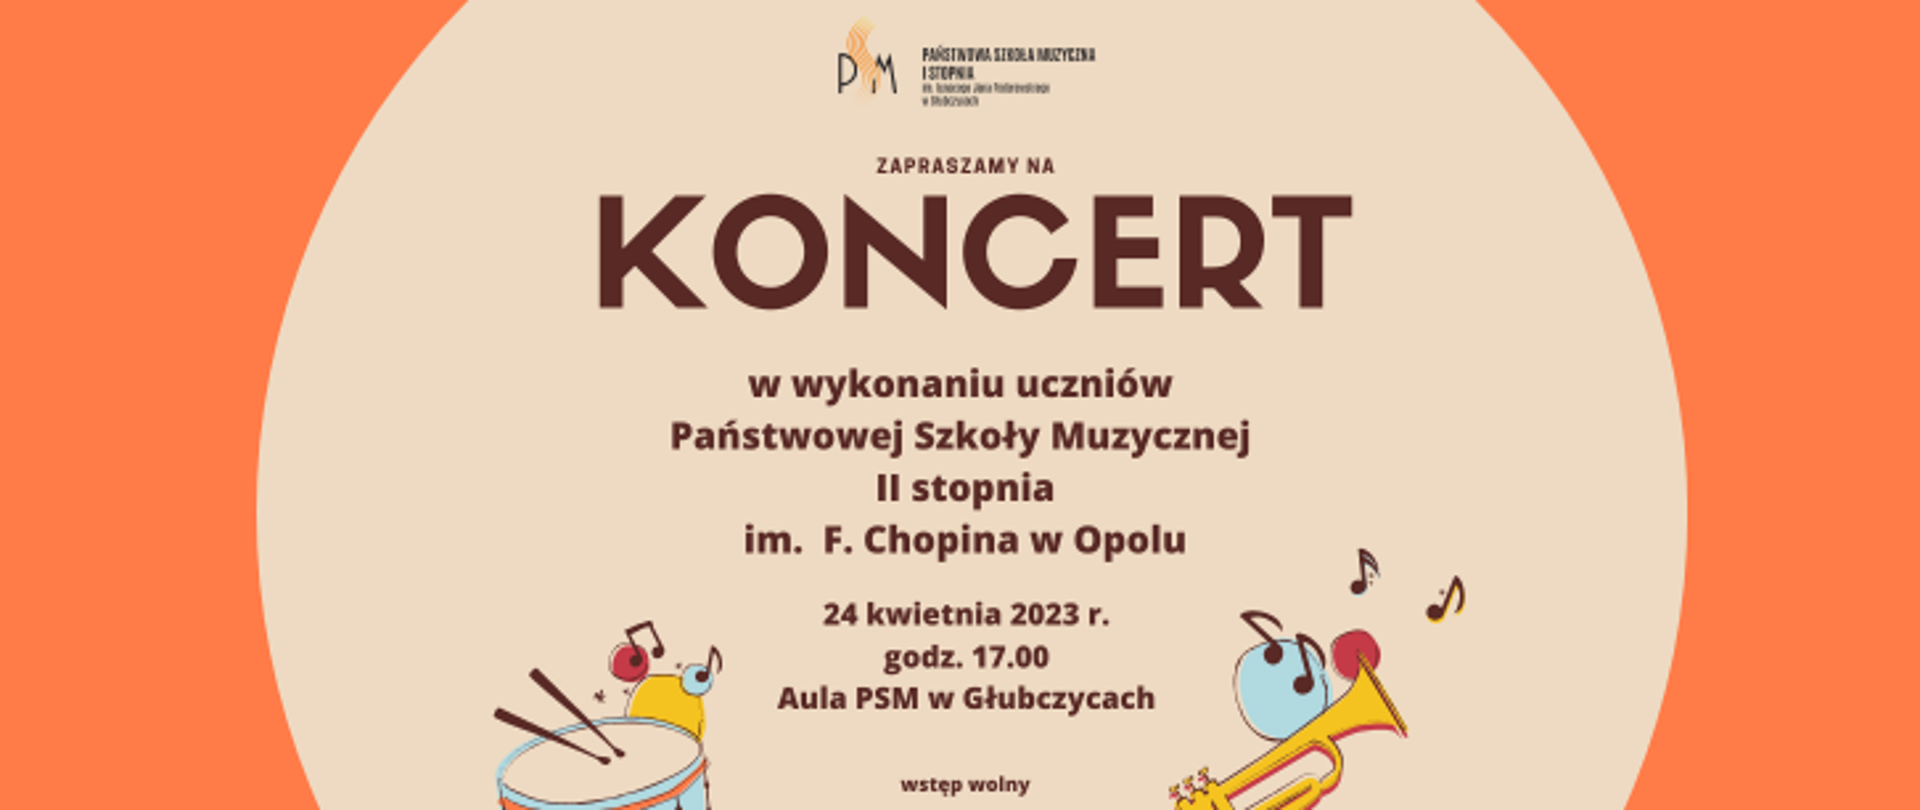 Informacja o koncercie uczniów Państwowej Szkoły Muzycznej II st. w Opolu, który odbędzie się 24 kwietnia 2023 r w auli PSM w Głubczycach. Napis na jasnym tle, na dole ikonki trąbki i werbla.